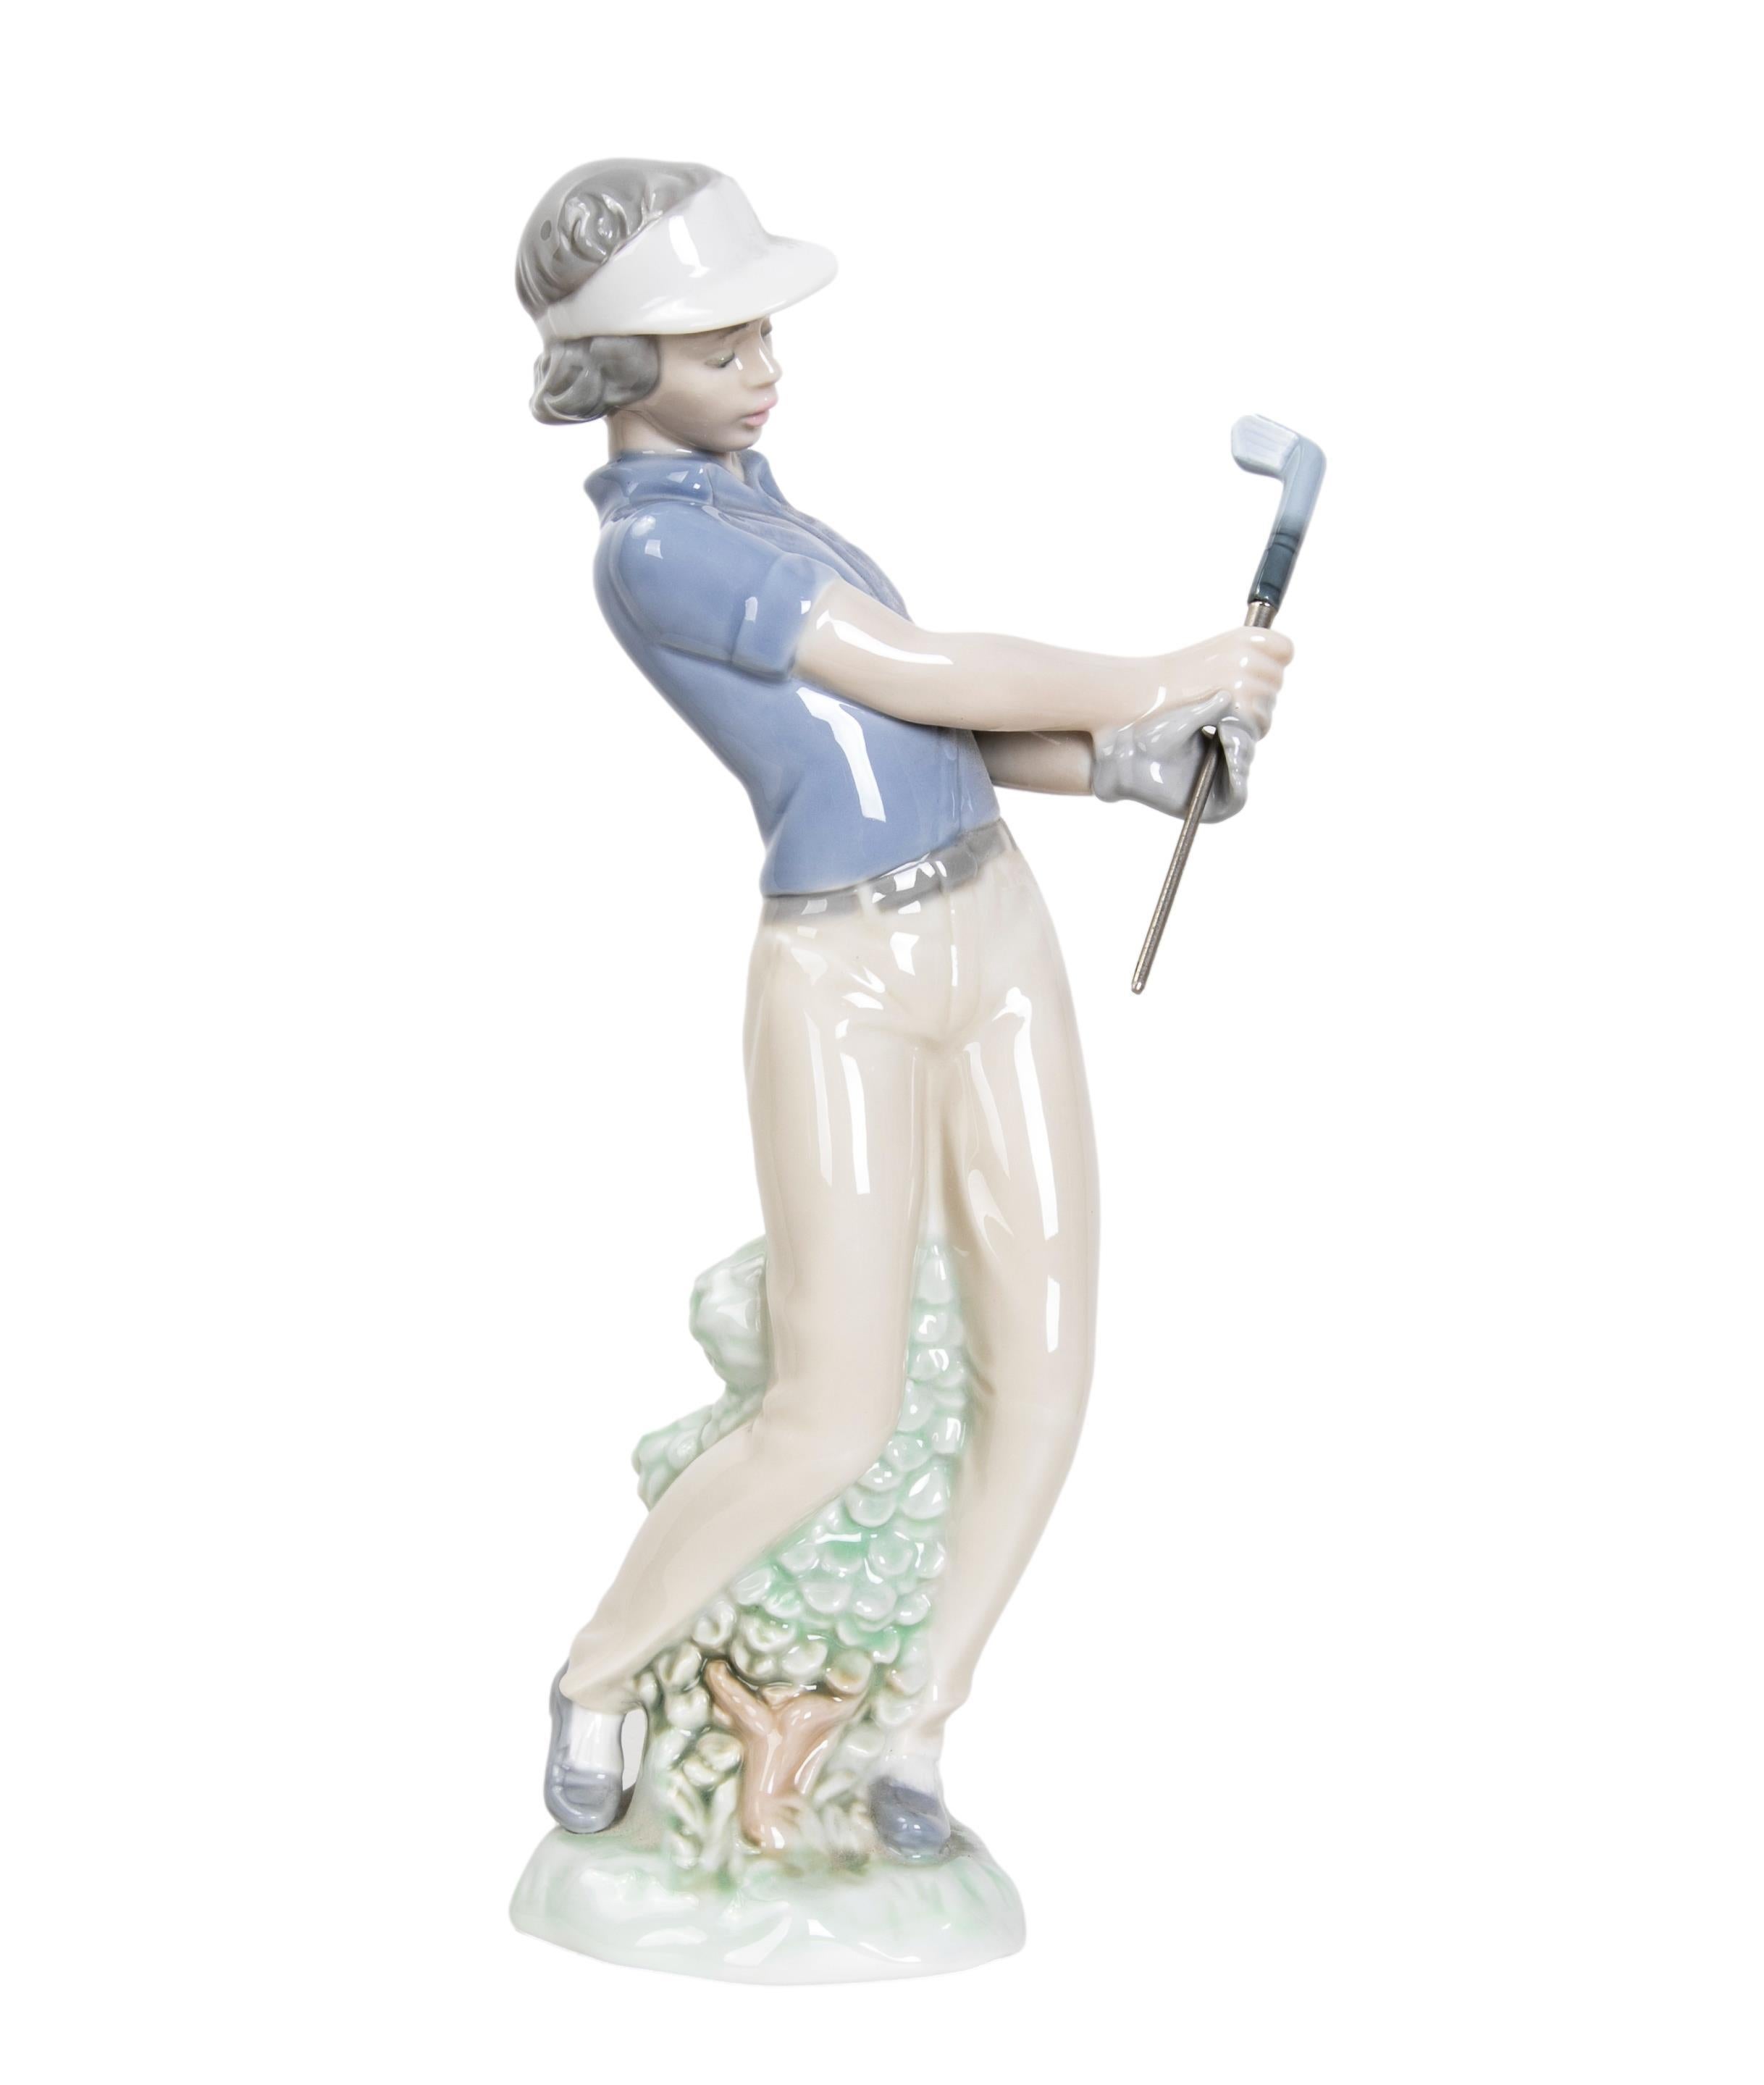 Figura de porcelana de jugador de golf, firmada 1985. Lladro.